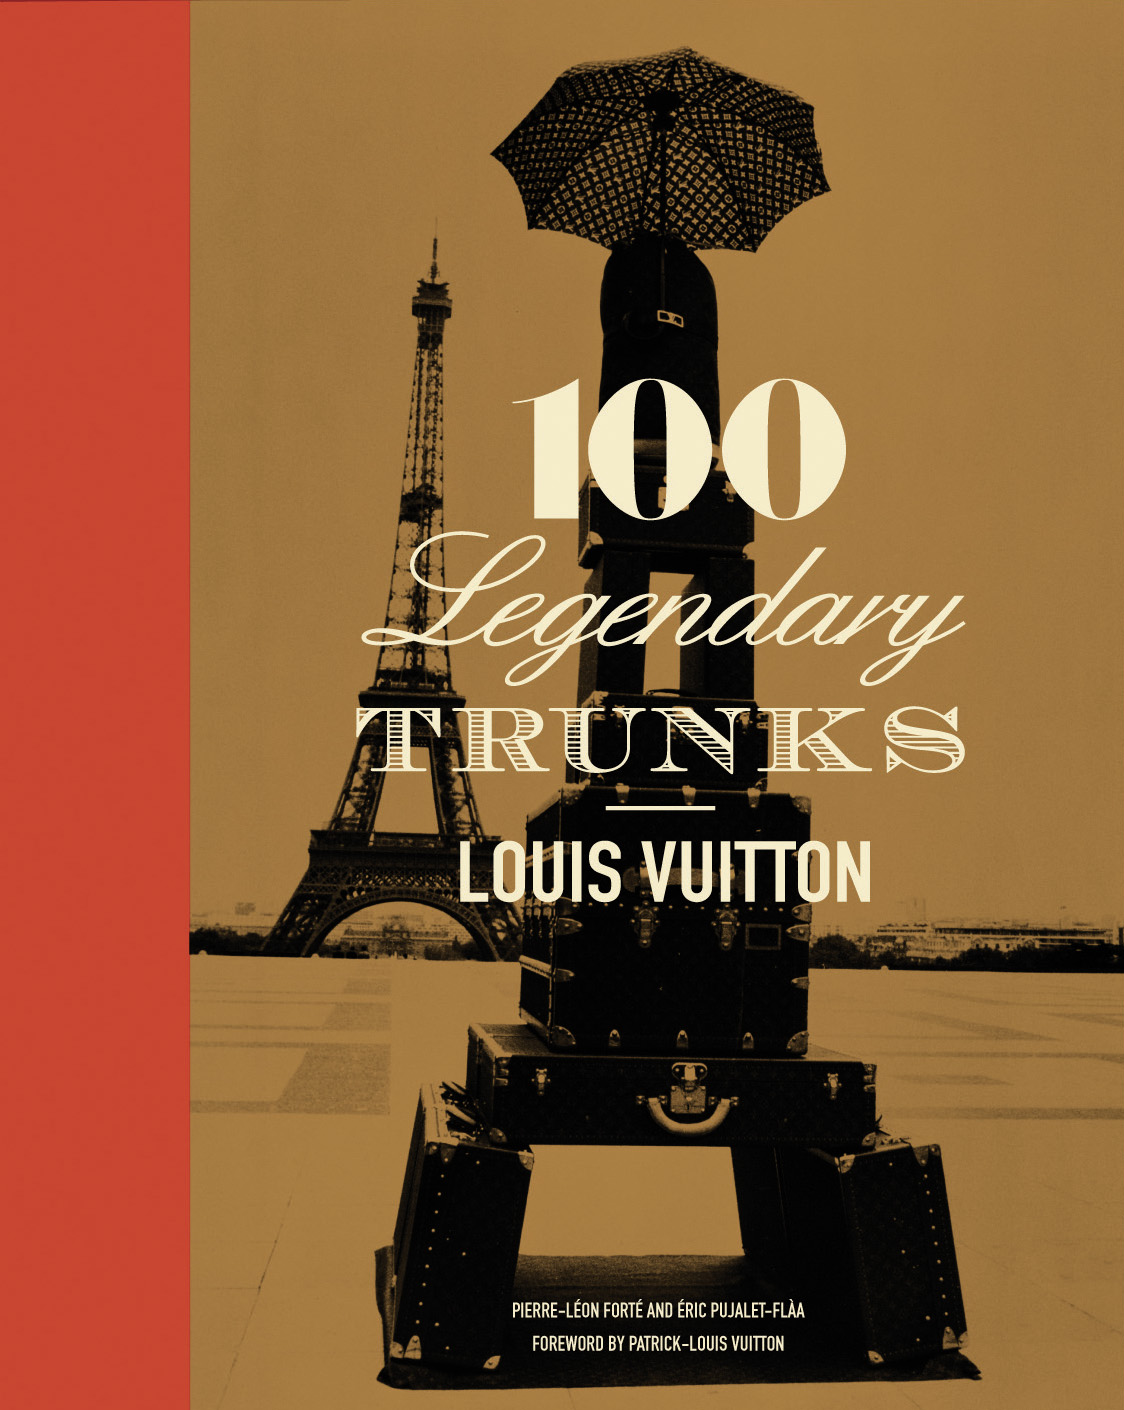 ALBERTINE  Louis Vuitton: 100 Legendary Trunks